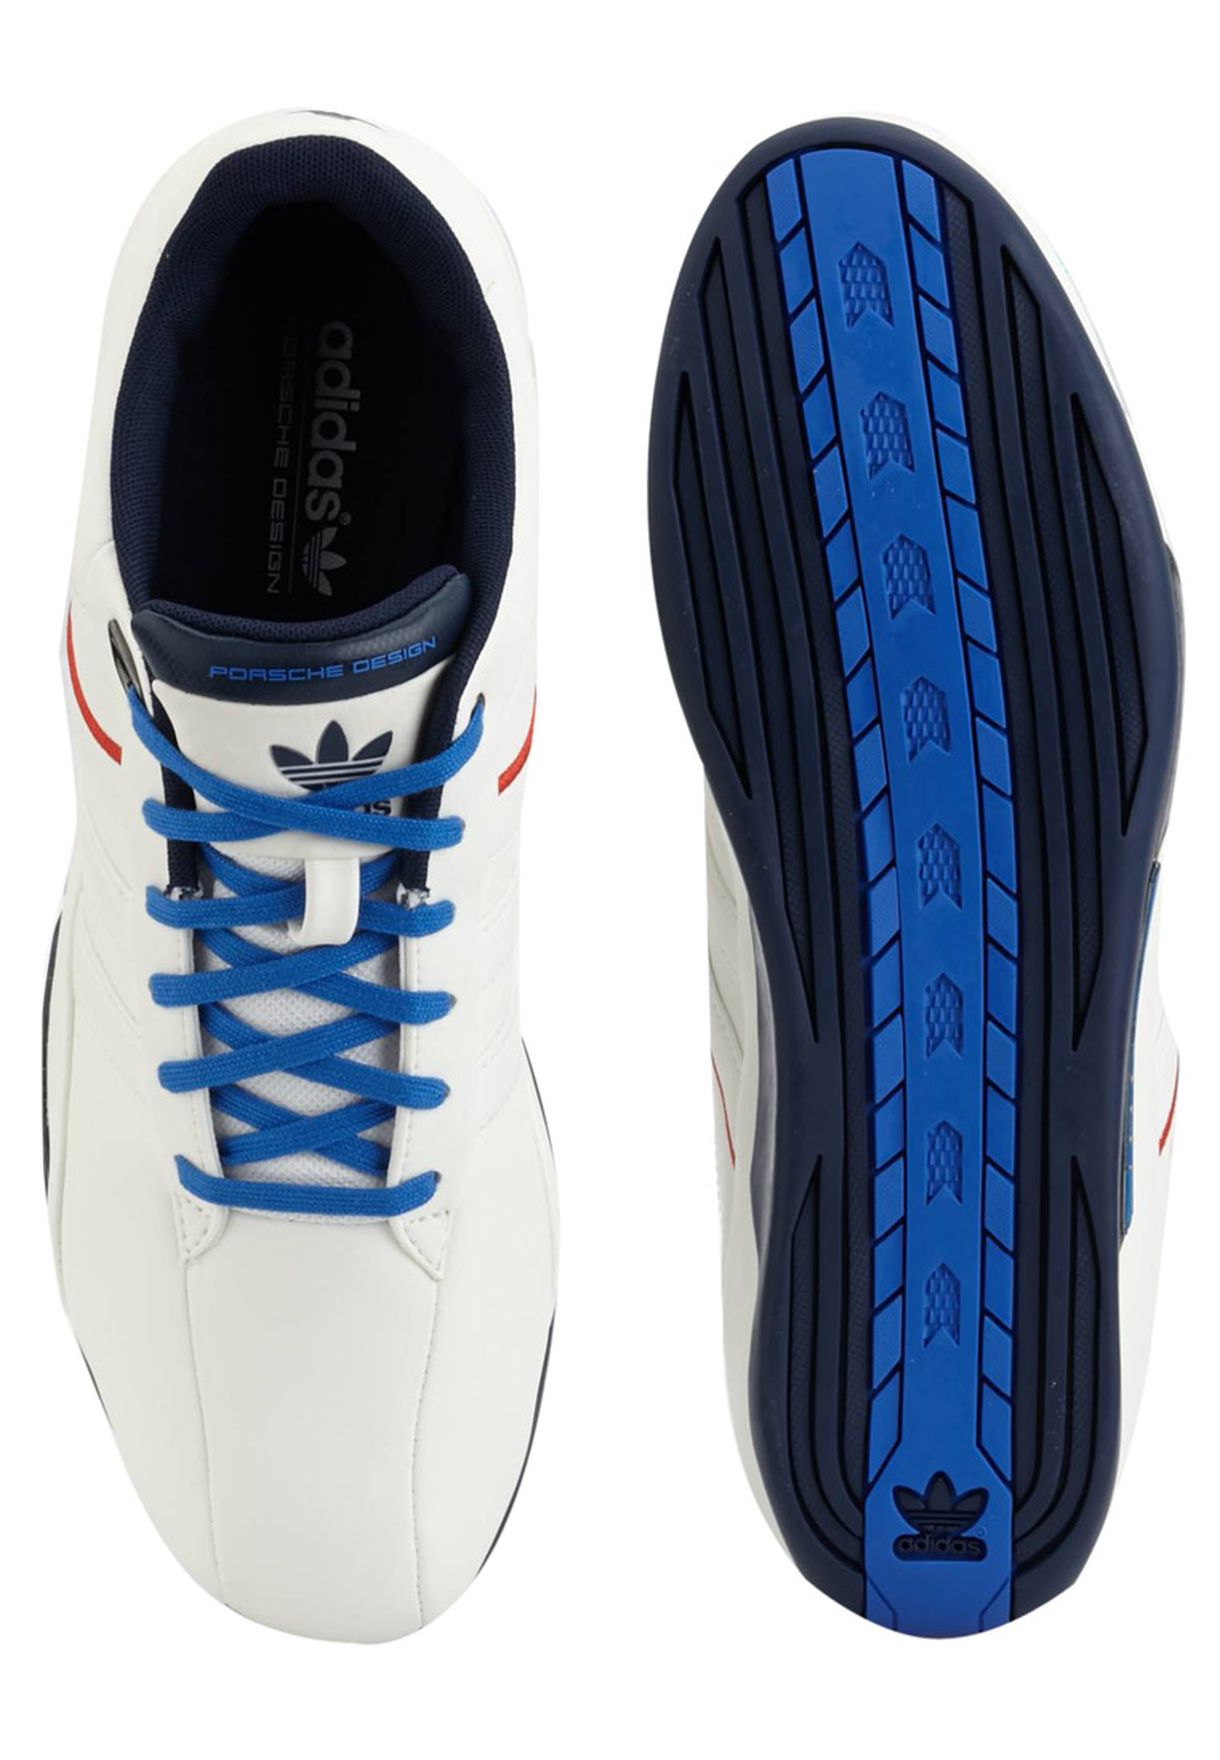 adidas porsche design 917 shoes